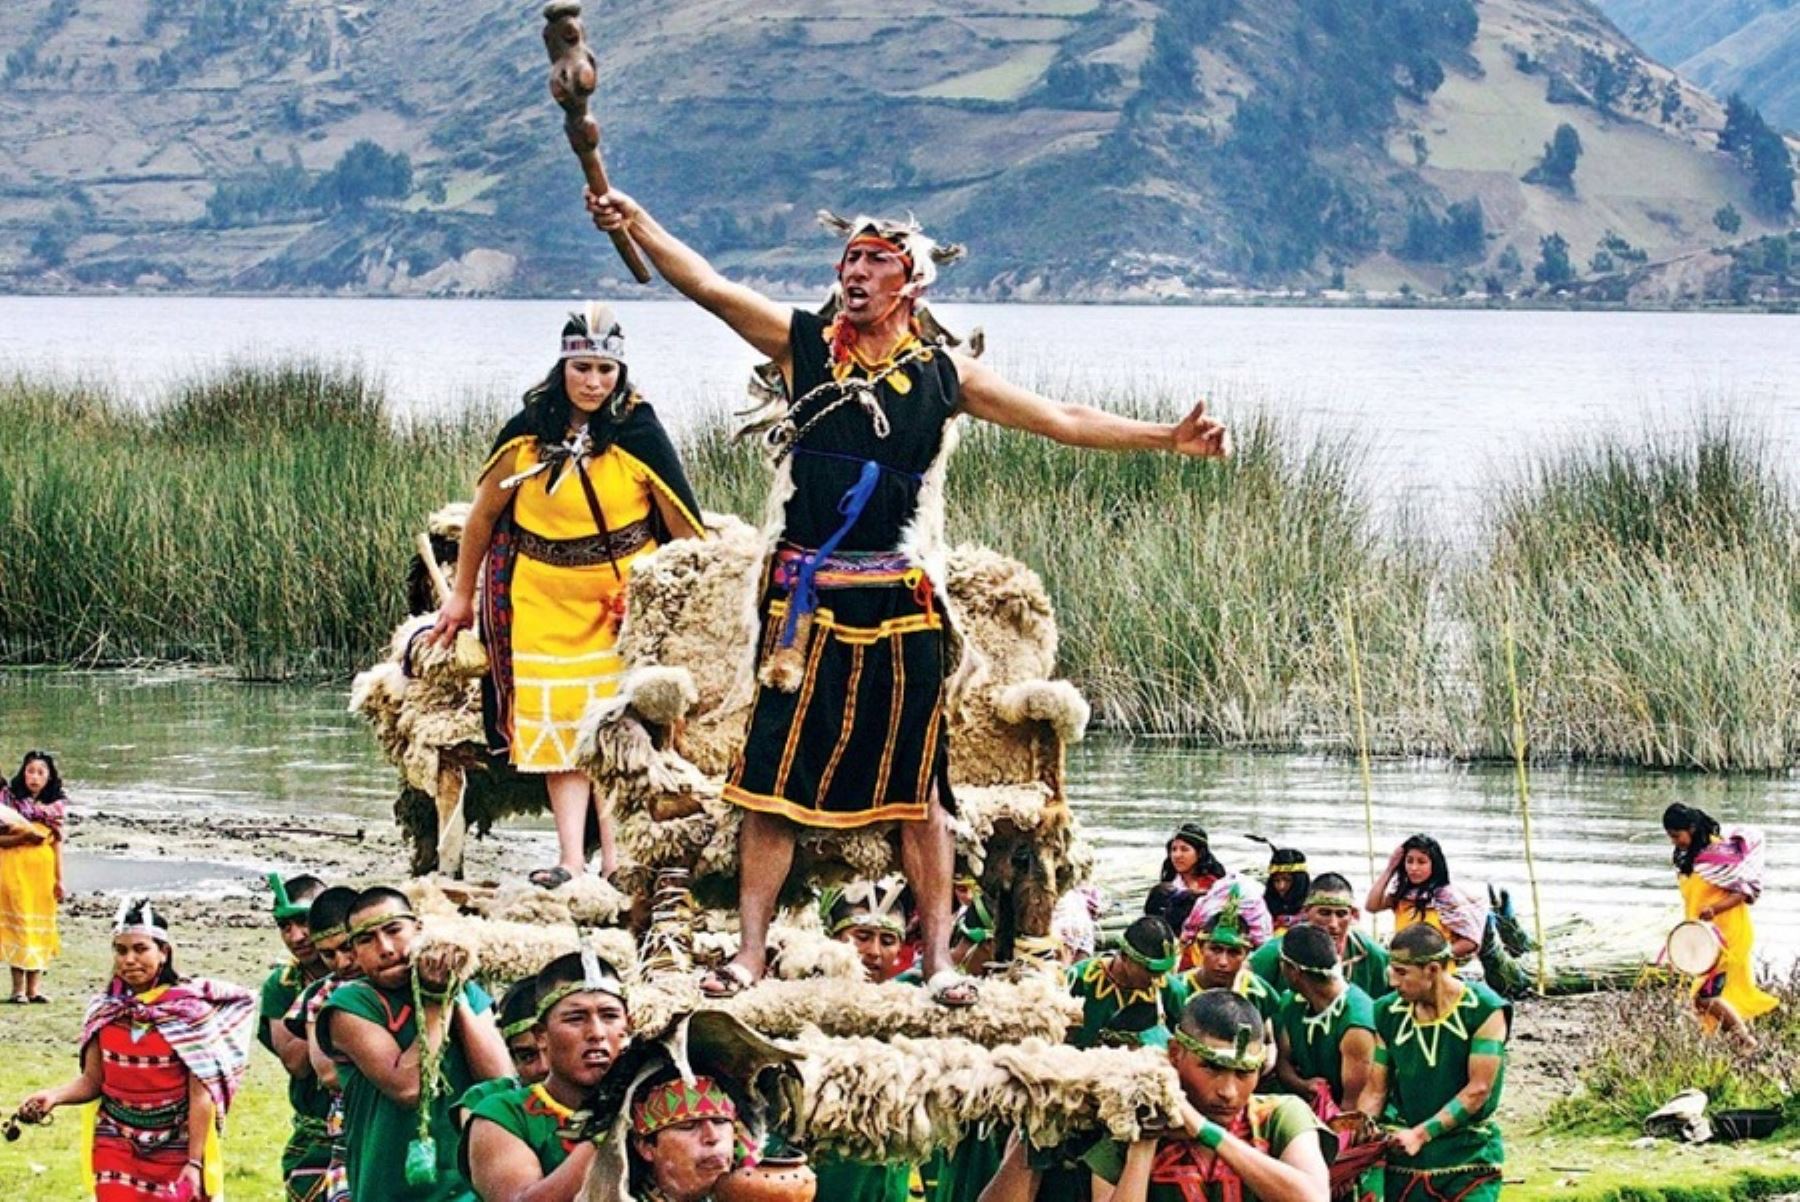 Considerada una epopeya que reivindica el valor y la identidad de un pueblo que no quiso someterse a la creciente expansión territorial de los incas, la festividad del Sondor Raymi, que se celebra este mes de junio, es una de las más emblemáticas del calendario jubilar de la región Apurímac.